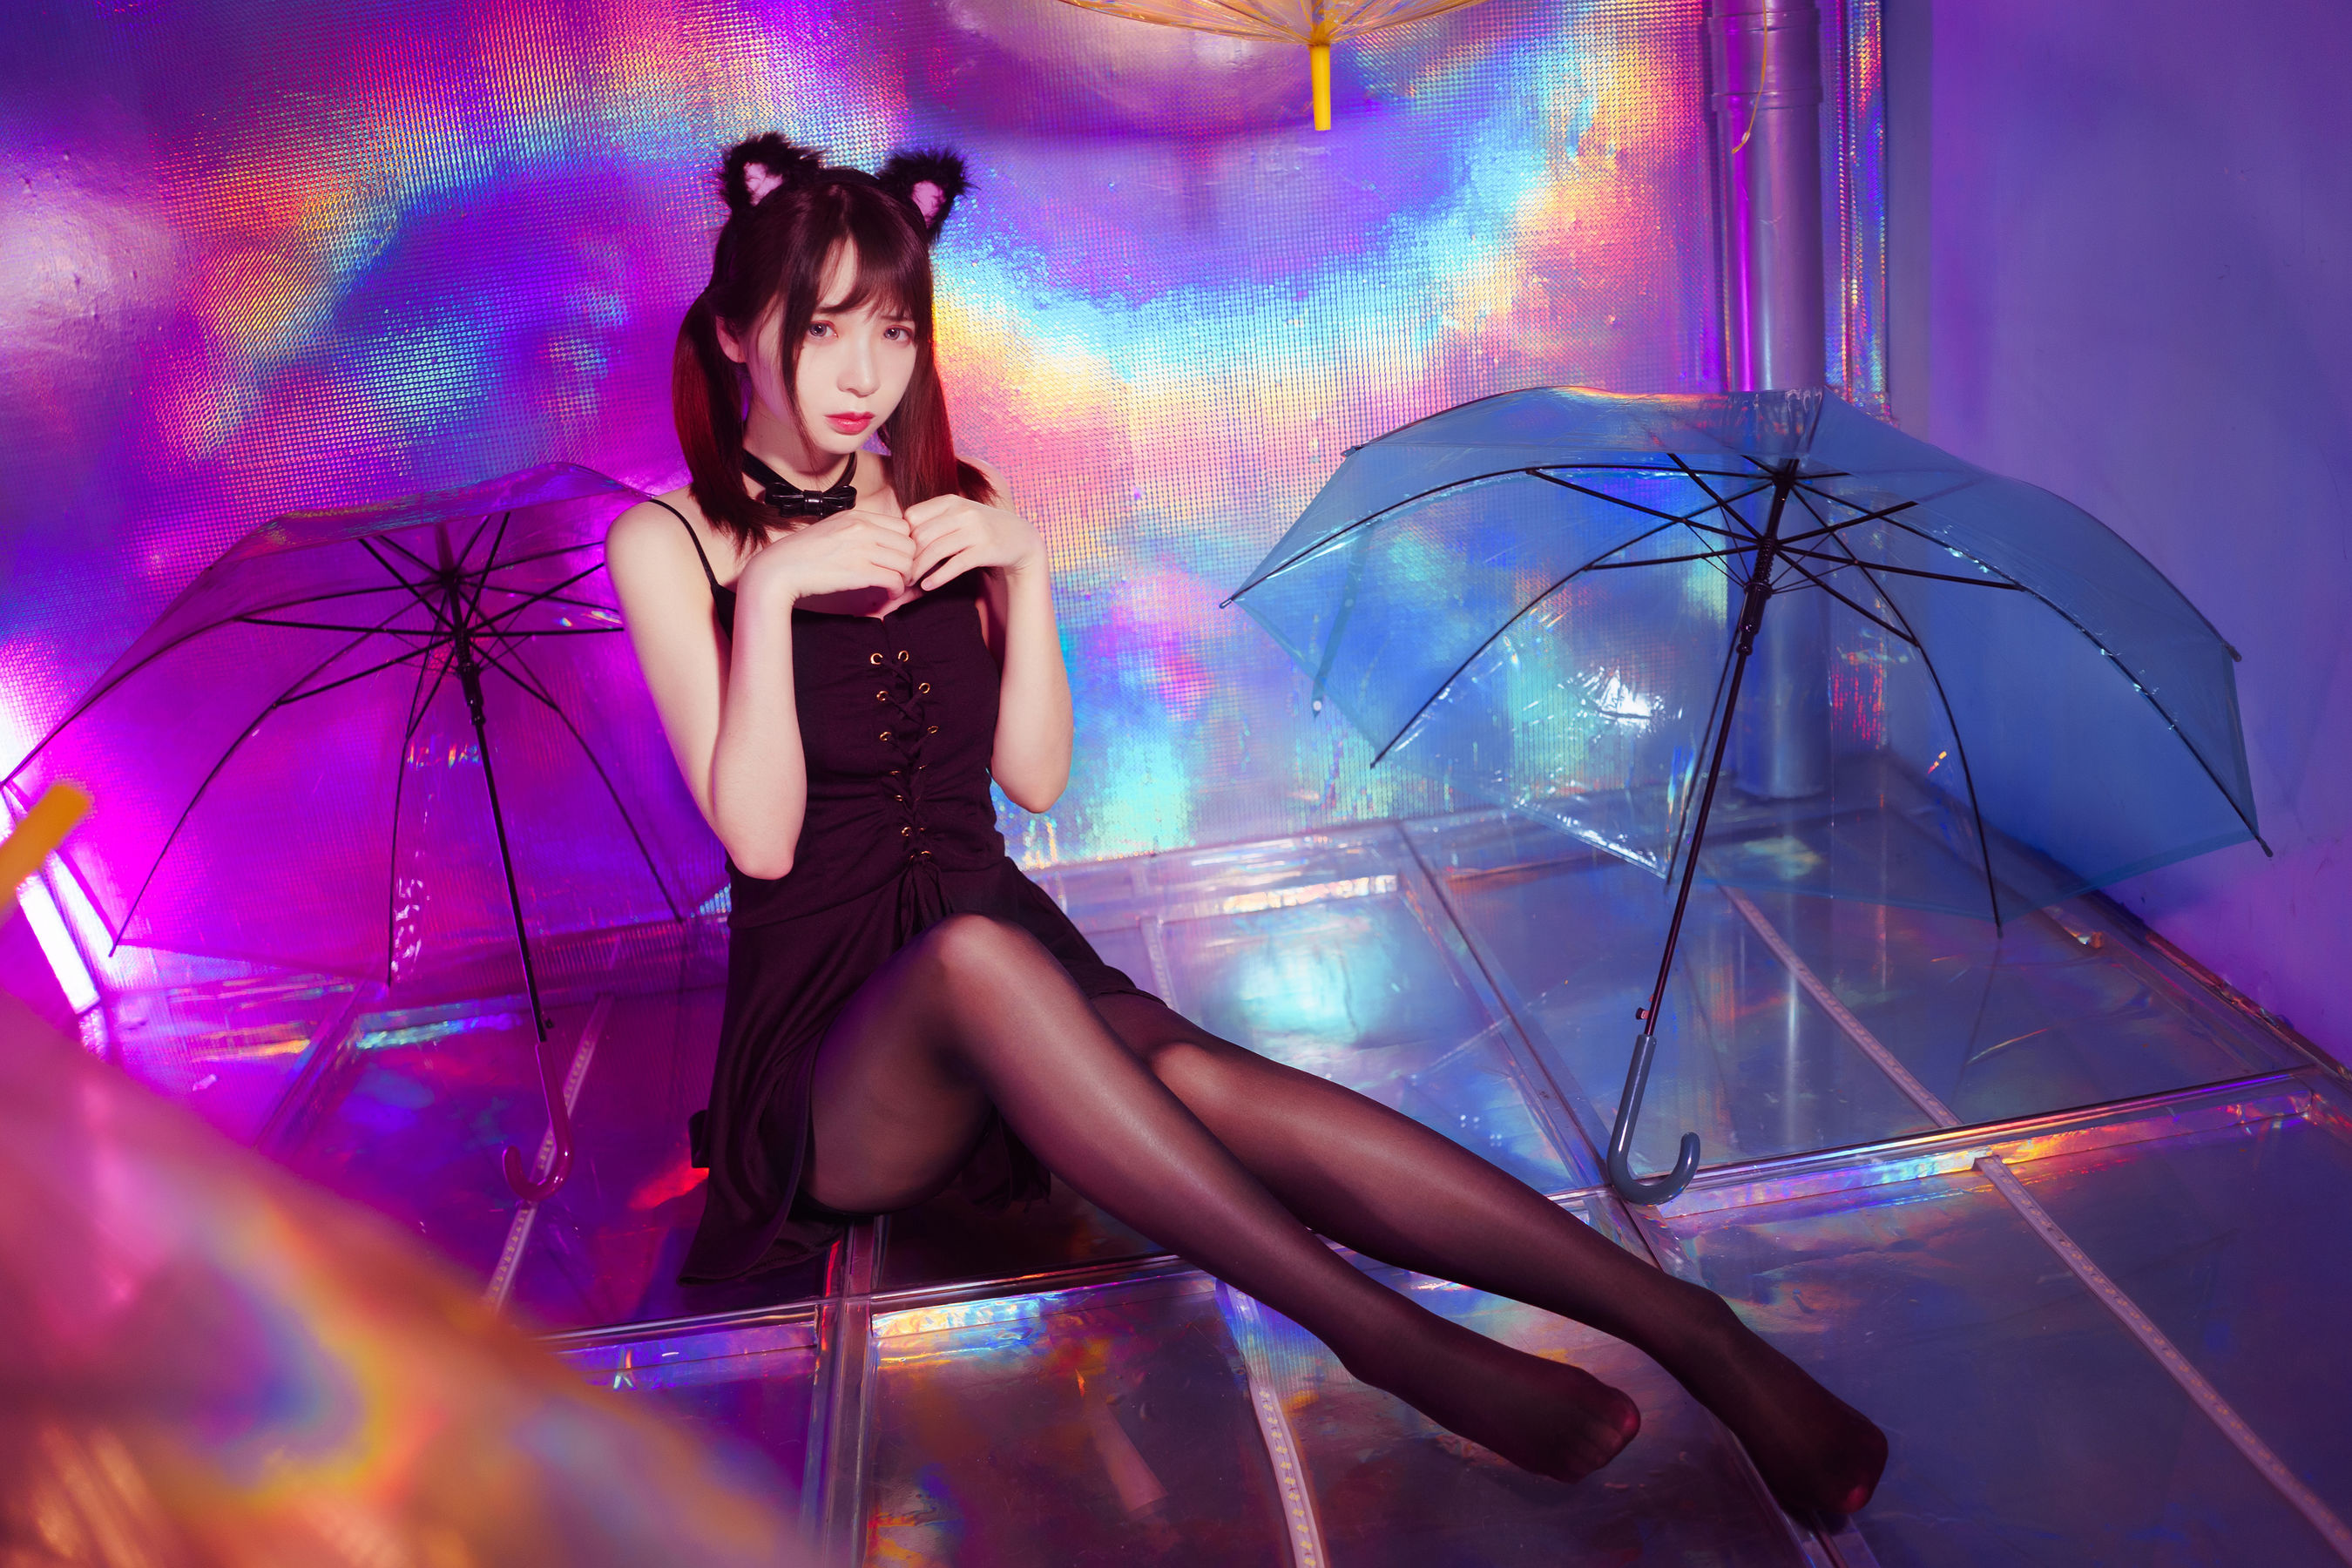 Women Model Asian Women Indoors Umbrella Twintails Cat Ears 2700x1800